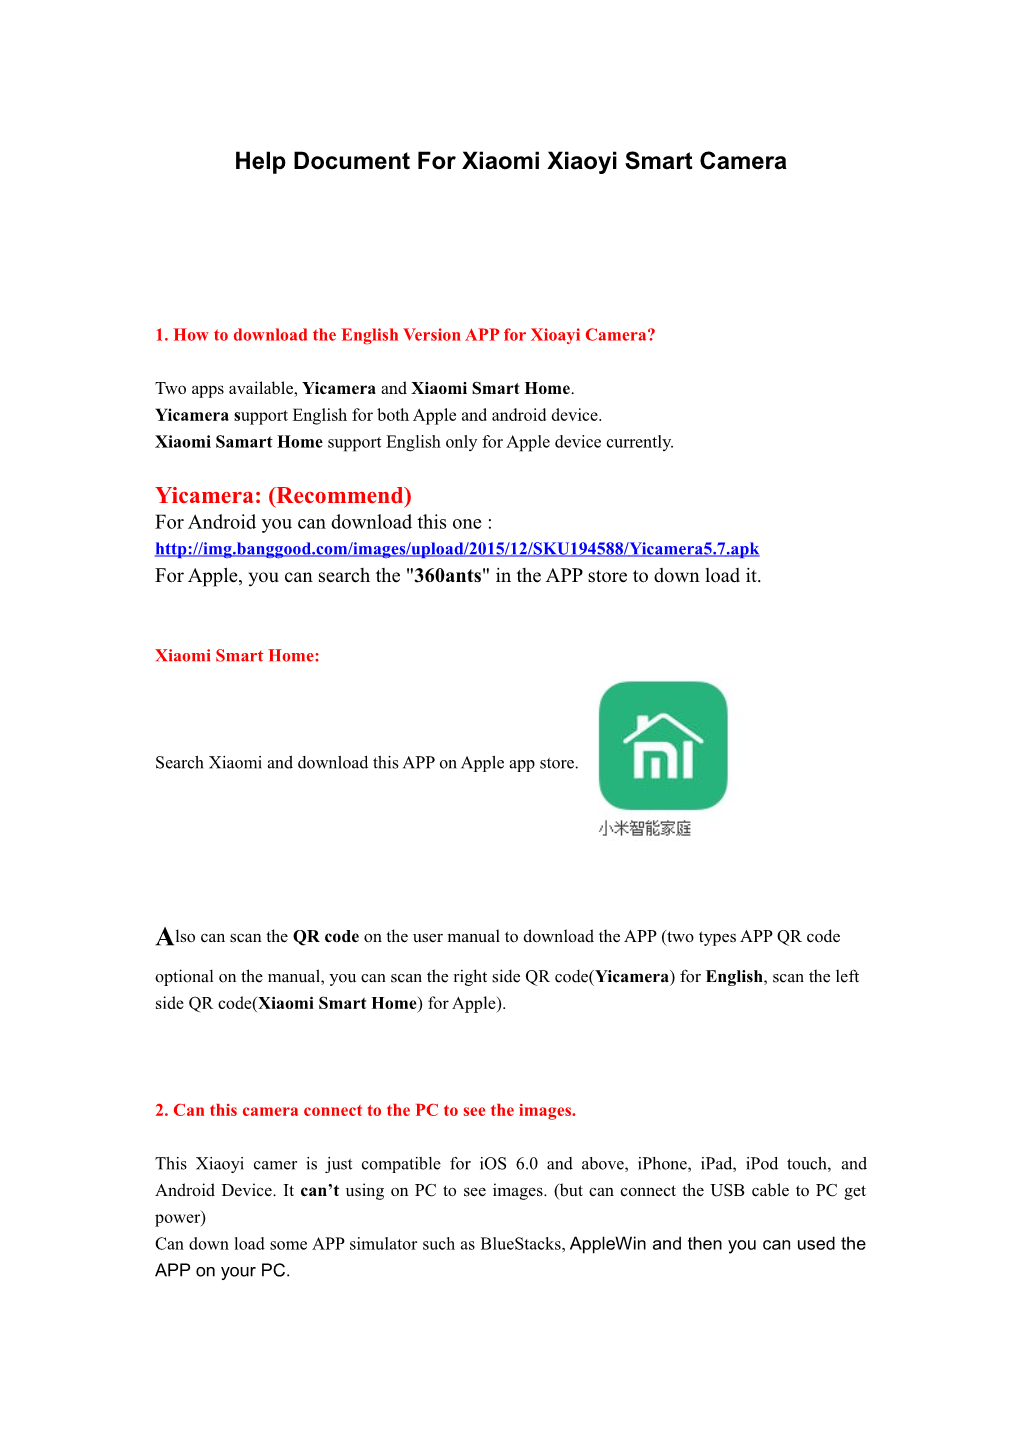 Help Document for Xiaomi Xiaoyi Smart Camera